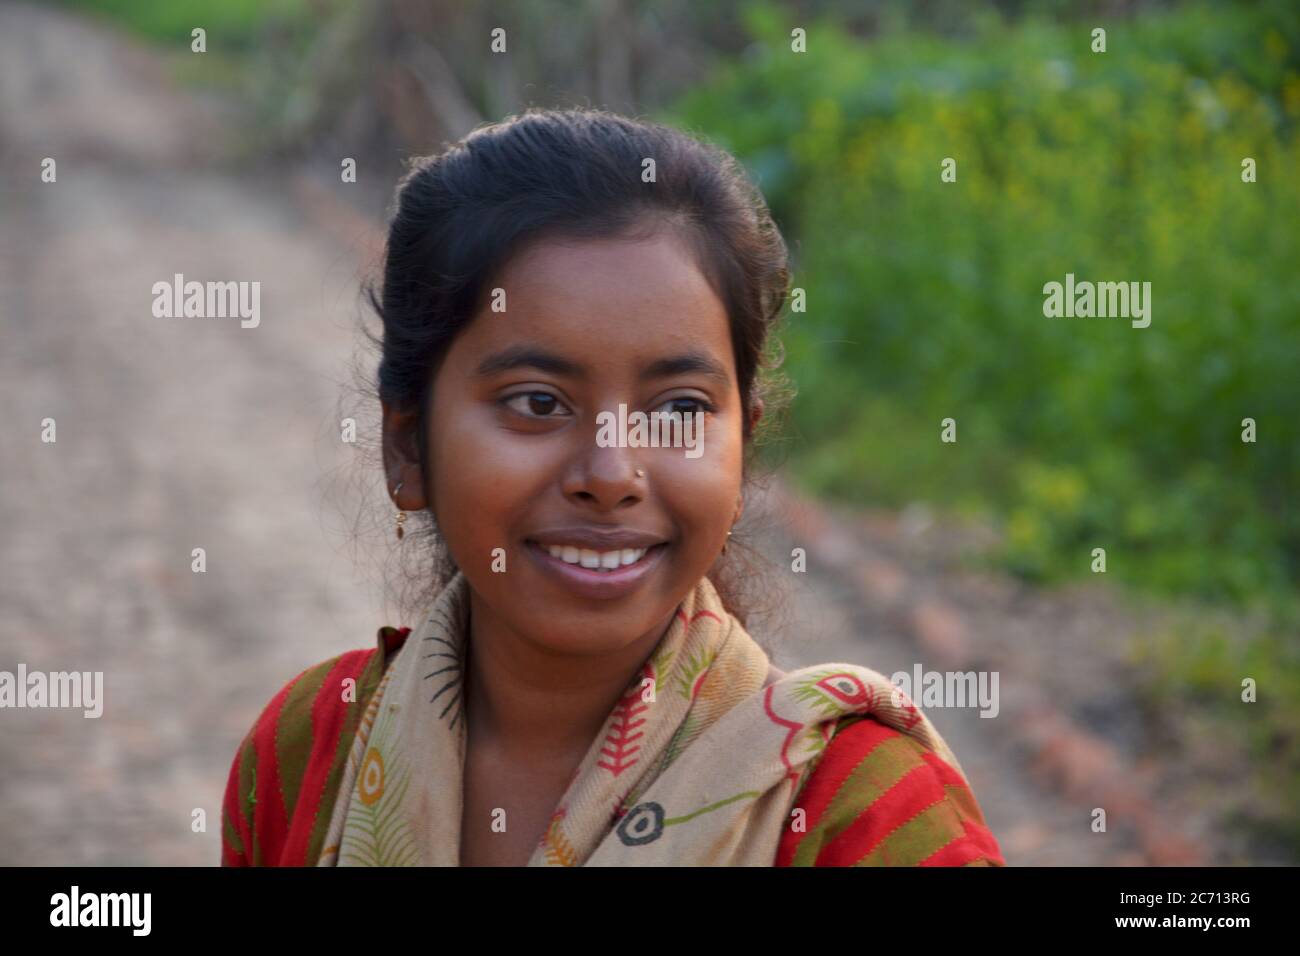 Ein indisches Teenager-Mädchen lächelt in einem ländlichen Dorf Feld, selektive Fokussierung Stockfoto